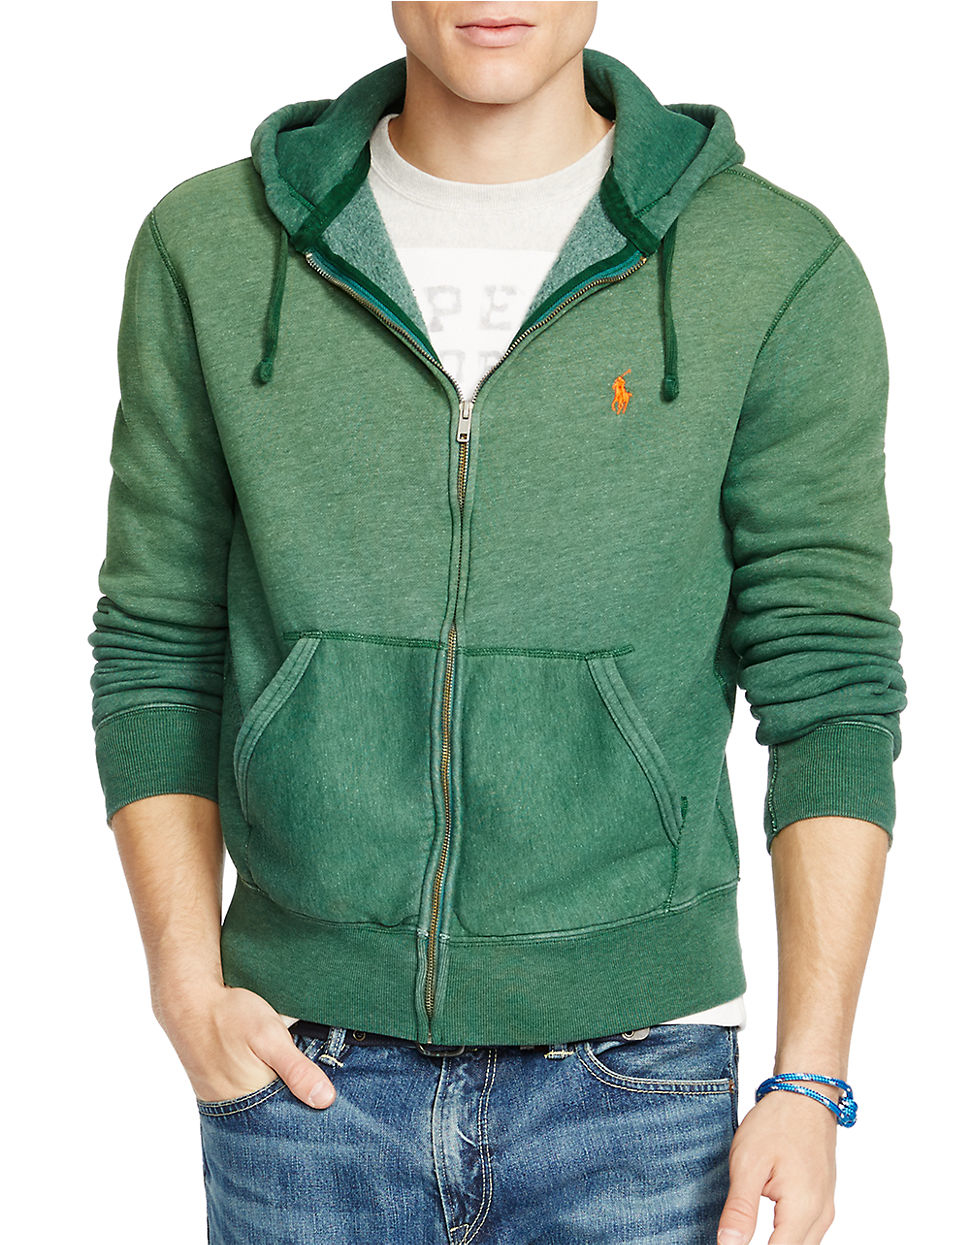 Polo Ralph Lauren Full-zip Fleece Hoodie in Green for Men - Lyst